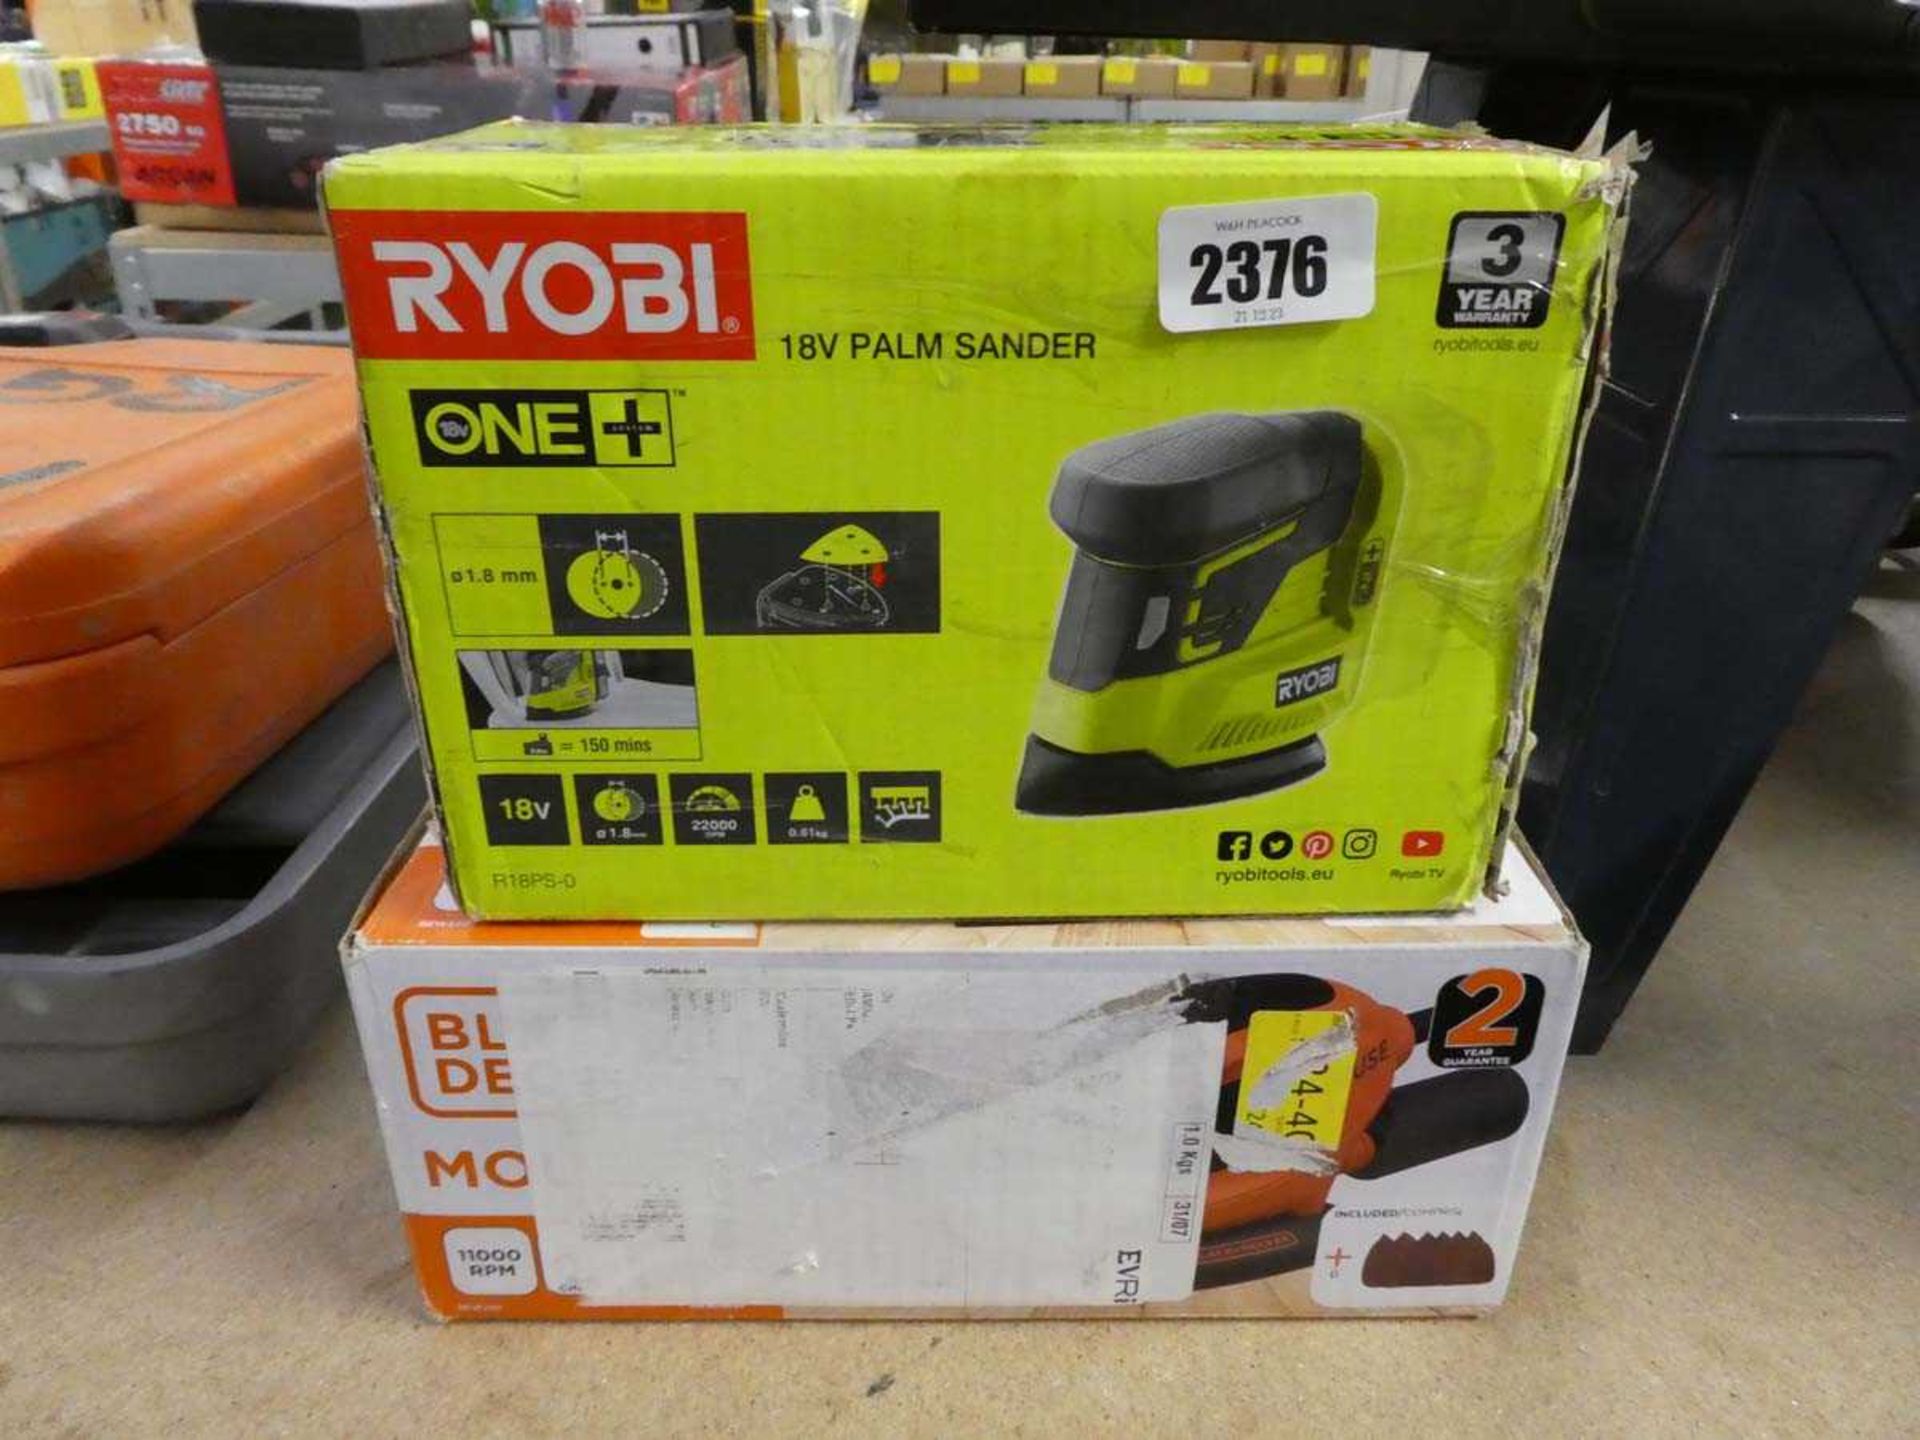 Ryobi 18V palm sander with Black & Decker electric mouse sander